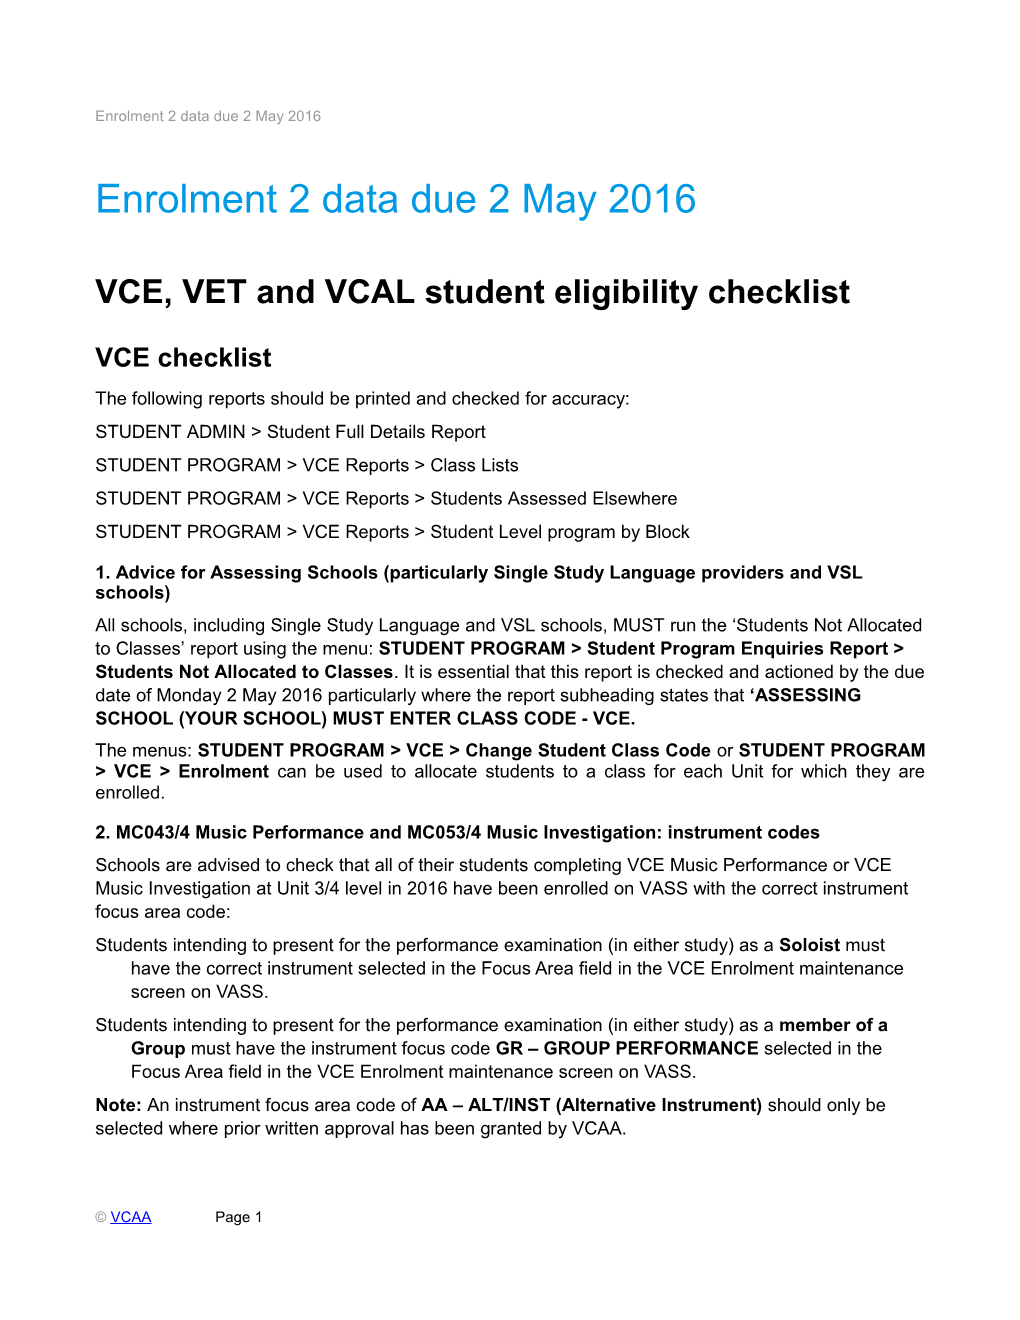 Enrolment 2 Data Due 2 May 2016